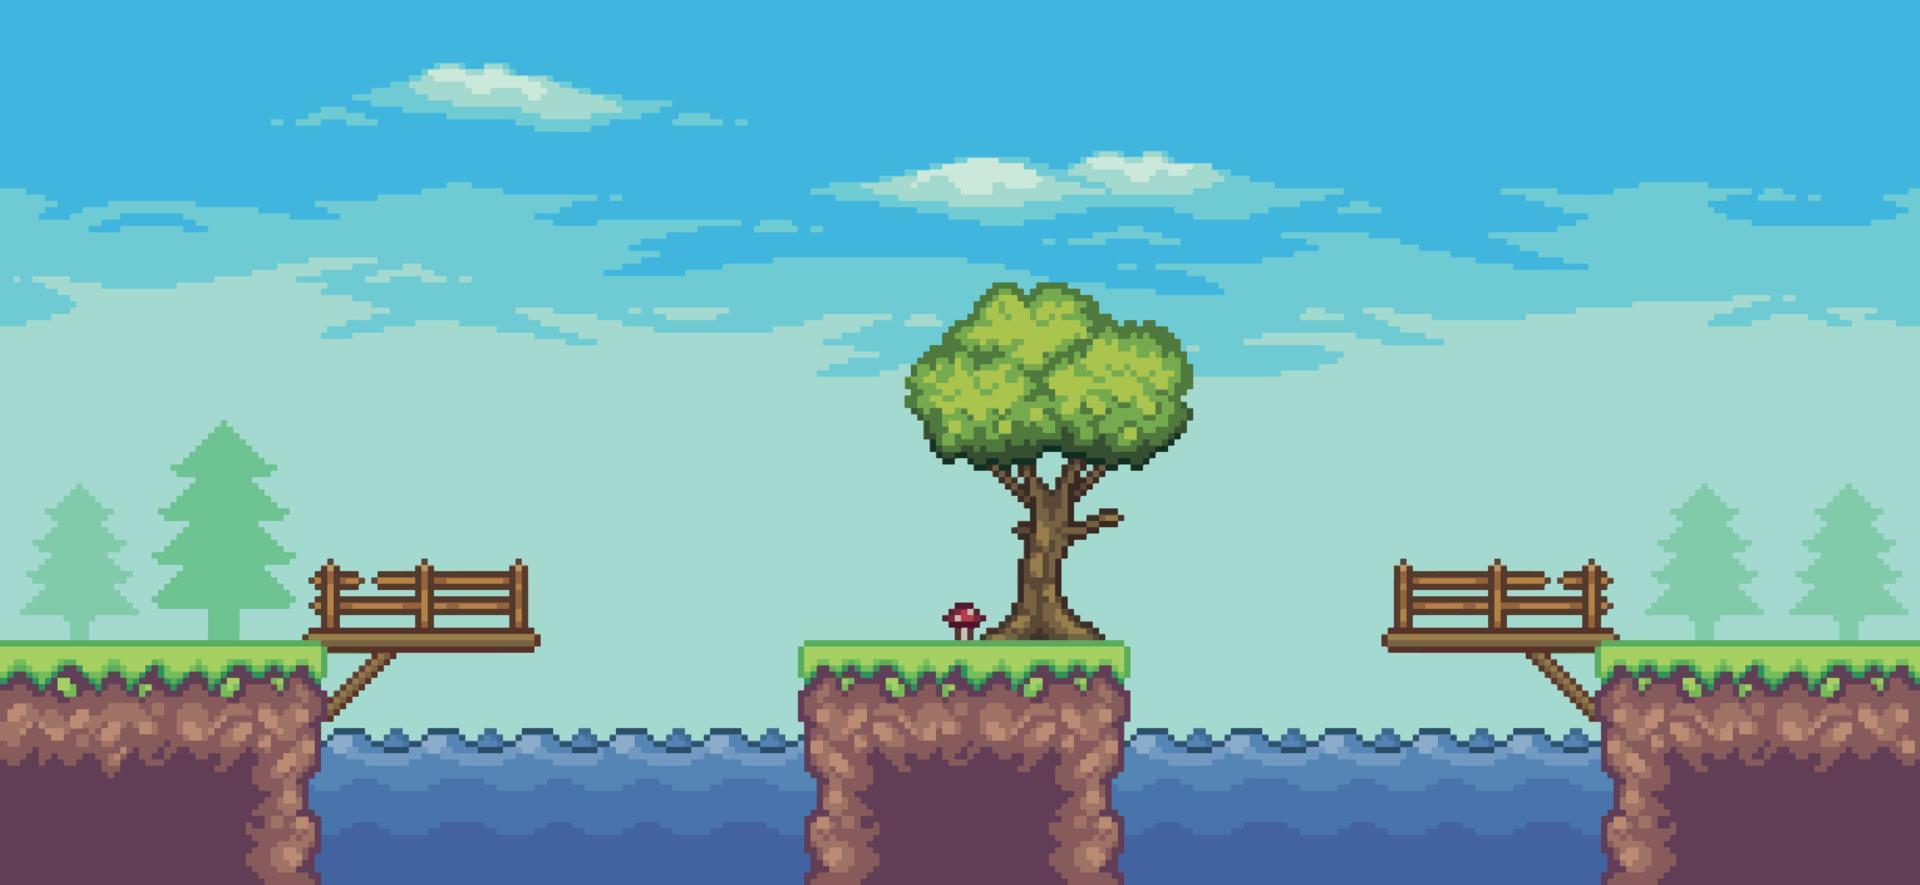 cena de jogo de arcade pixel art com árvore, lago, ponte, cerca e nuvens de fundo vetorial de 8 bits vetor